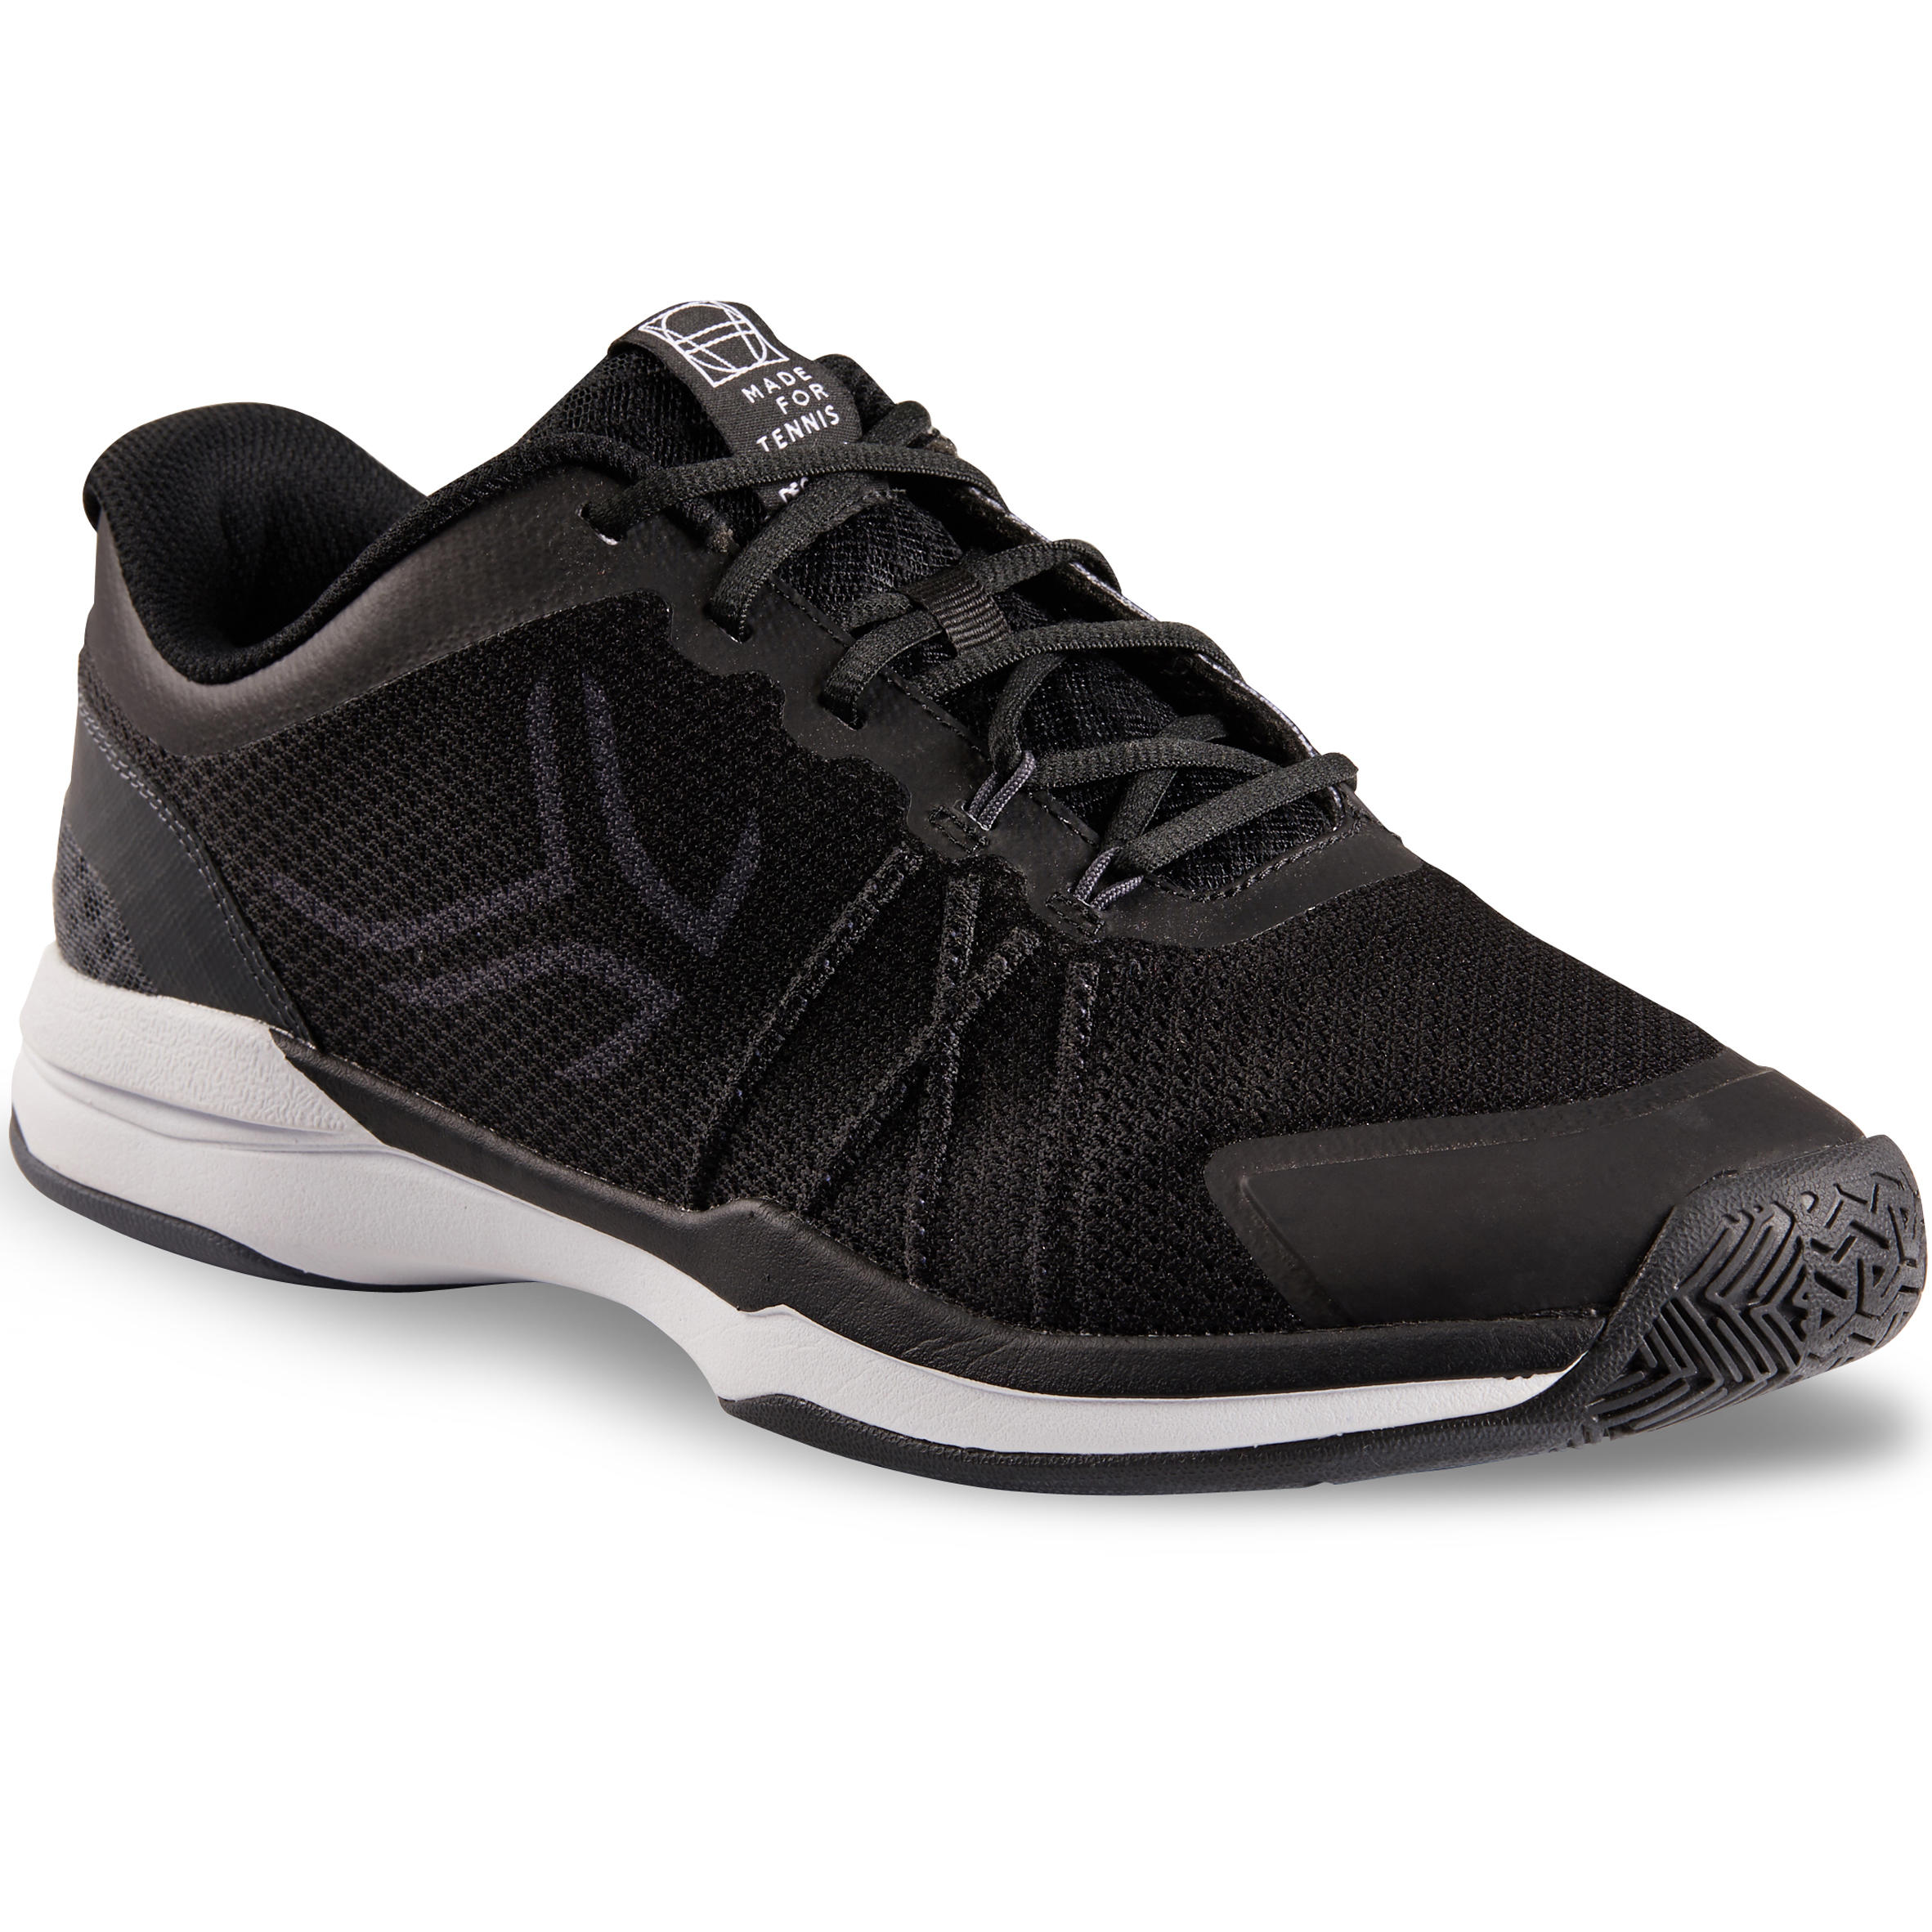 TS590 Multicourt Tennis Shoes - Black 1/9